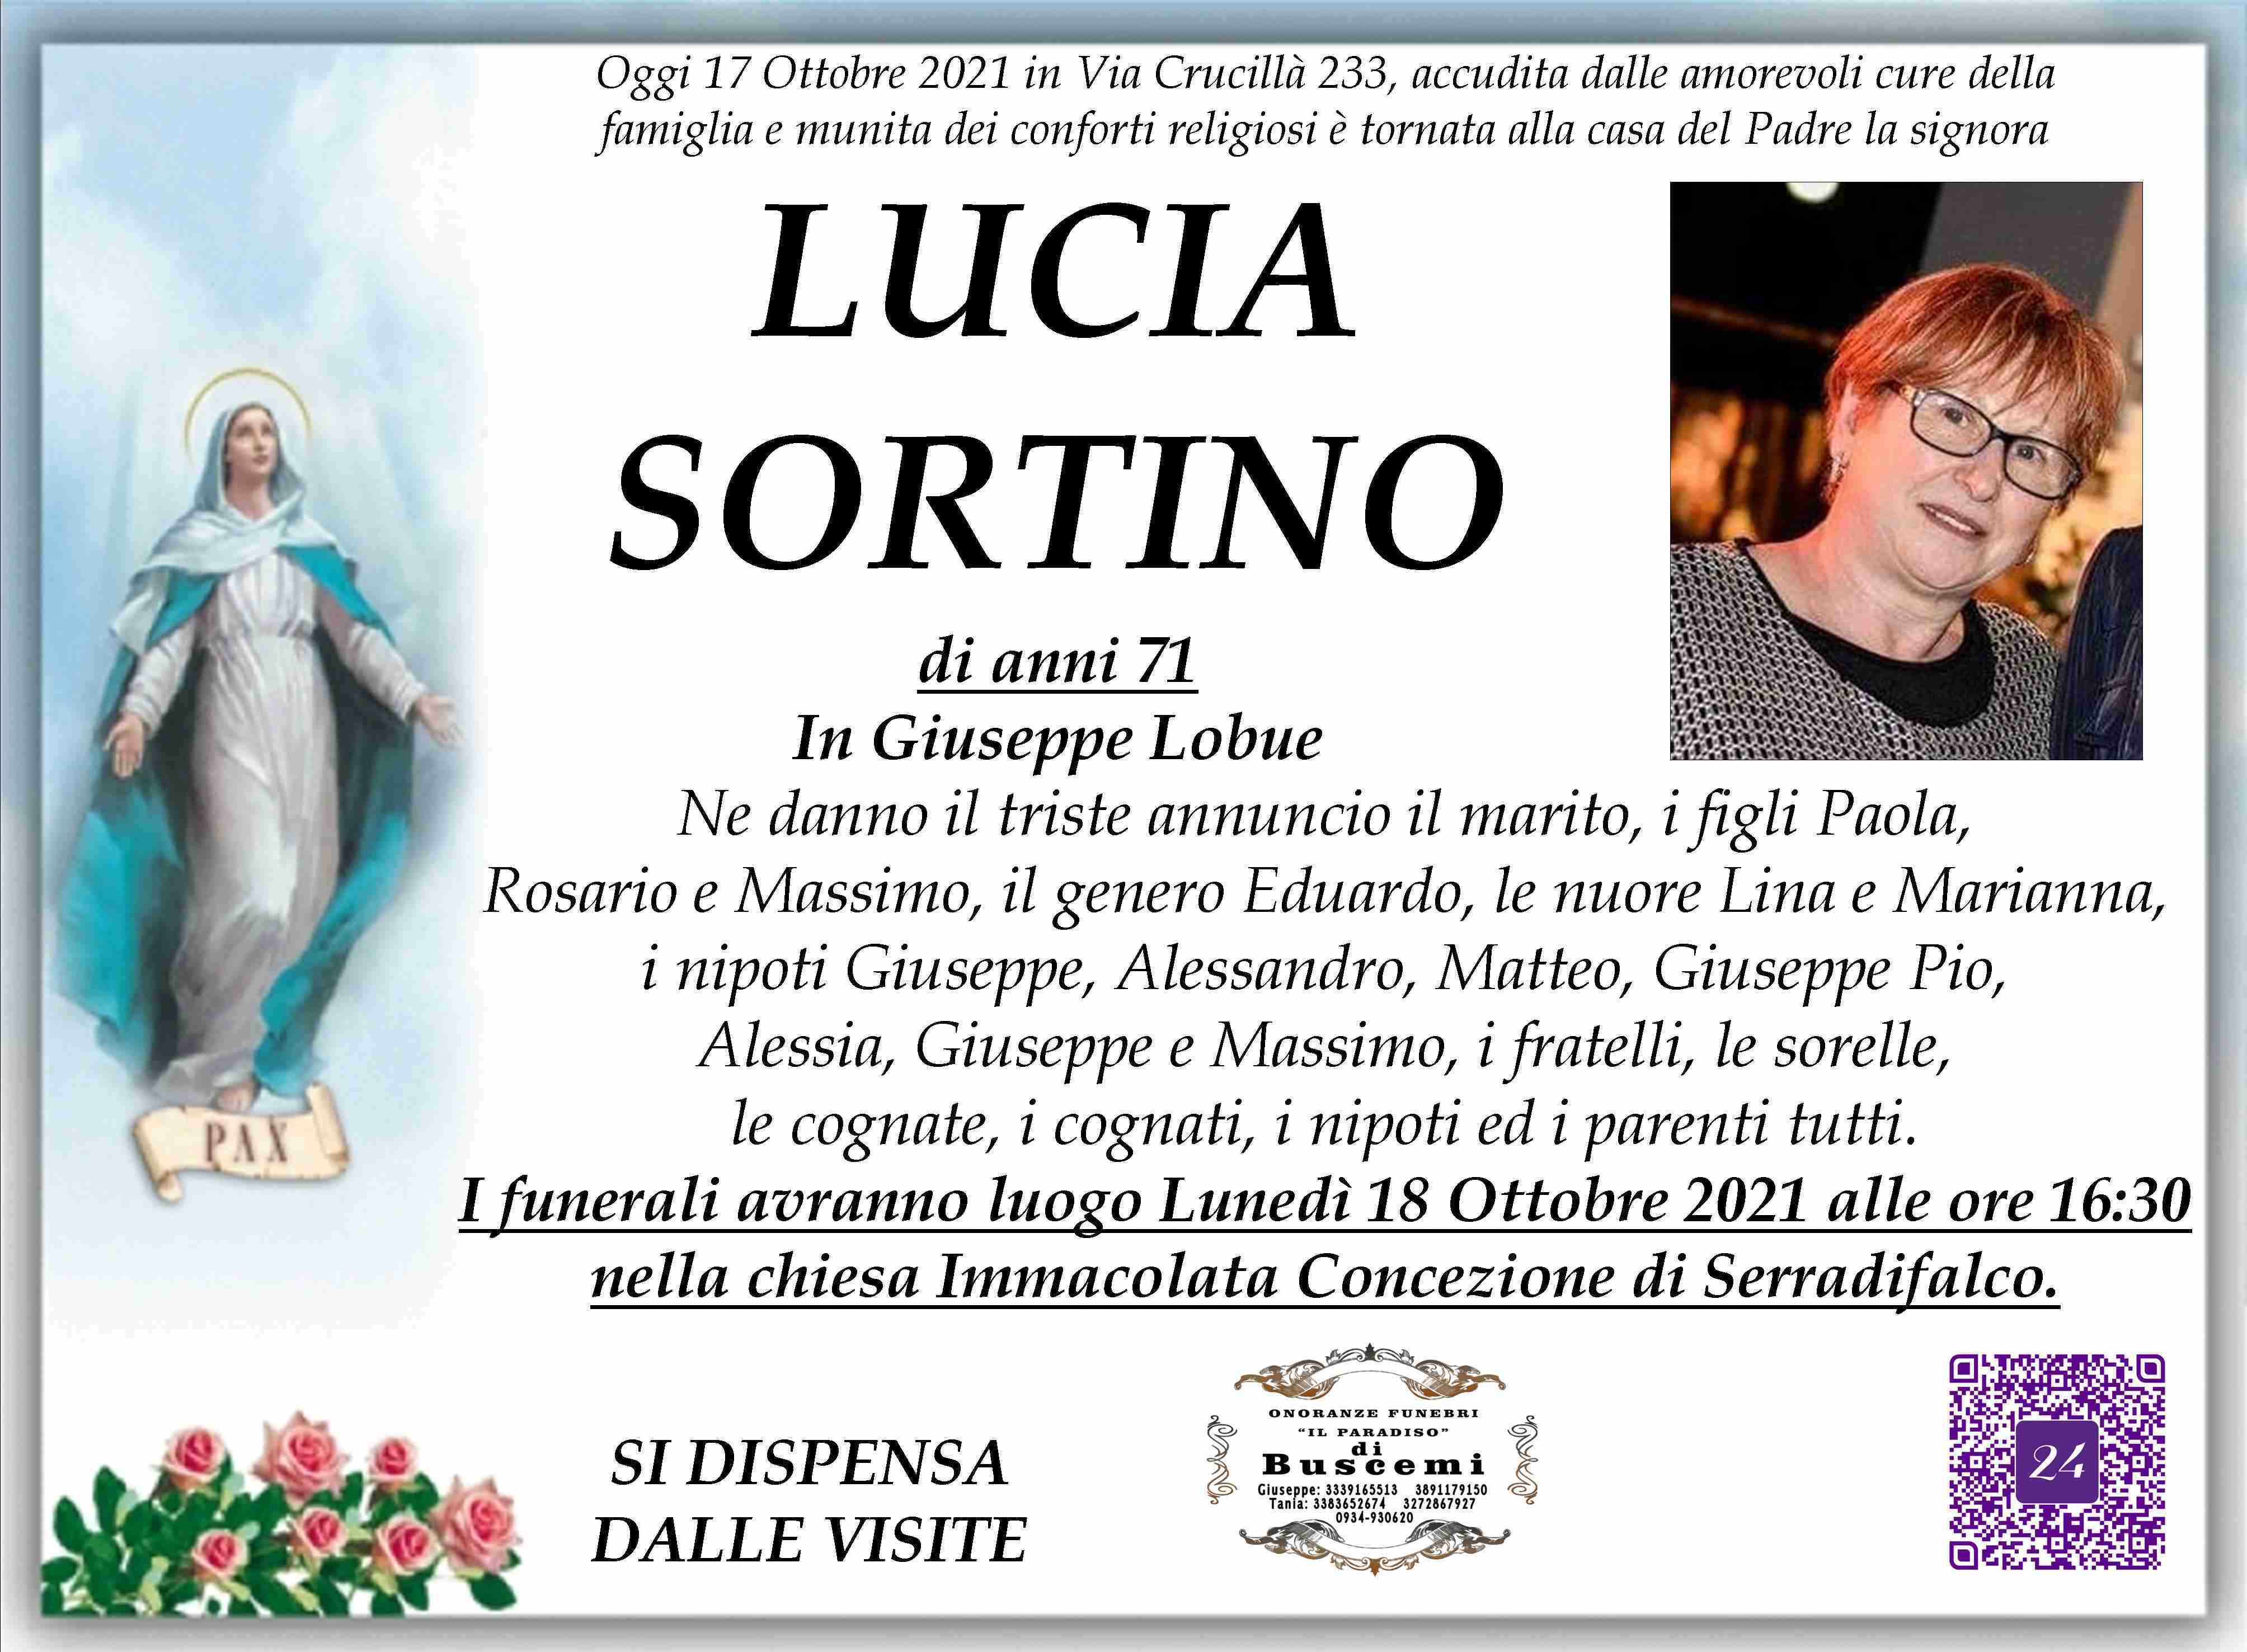 Lucia Sortino